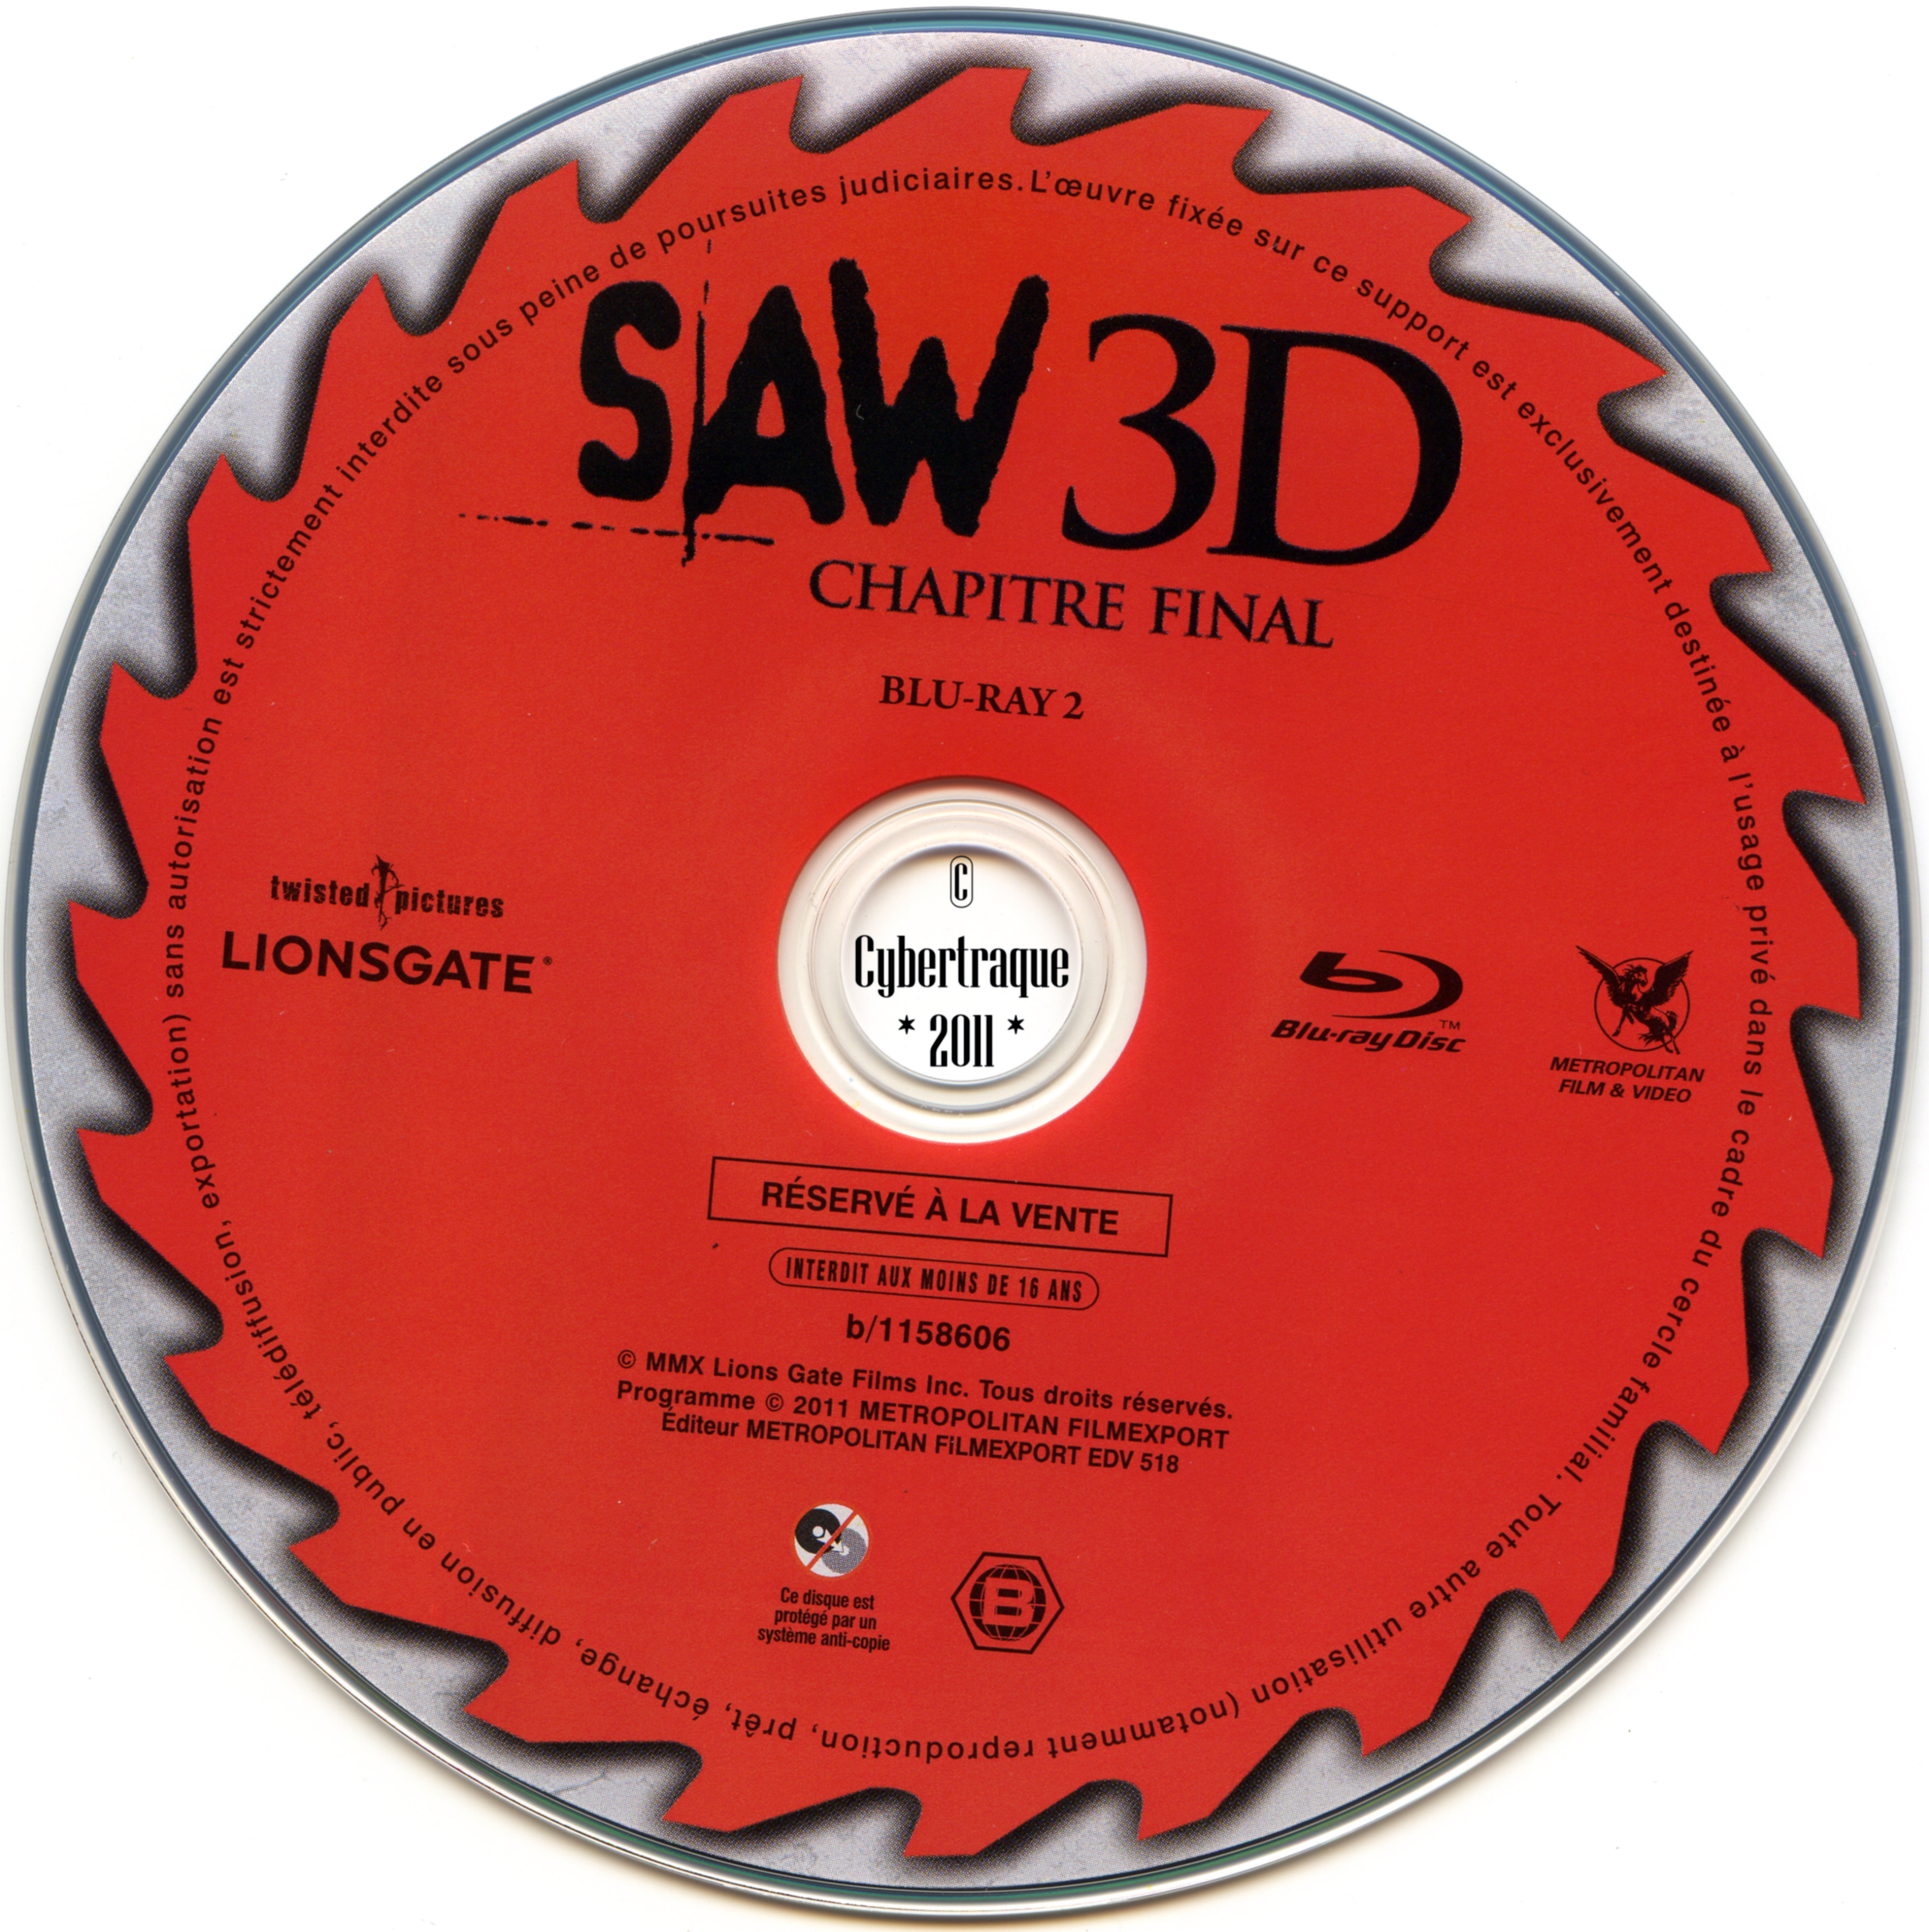 Saw 3D chapitre final DISC 2 (BLU-RAY)